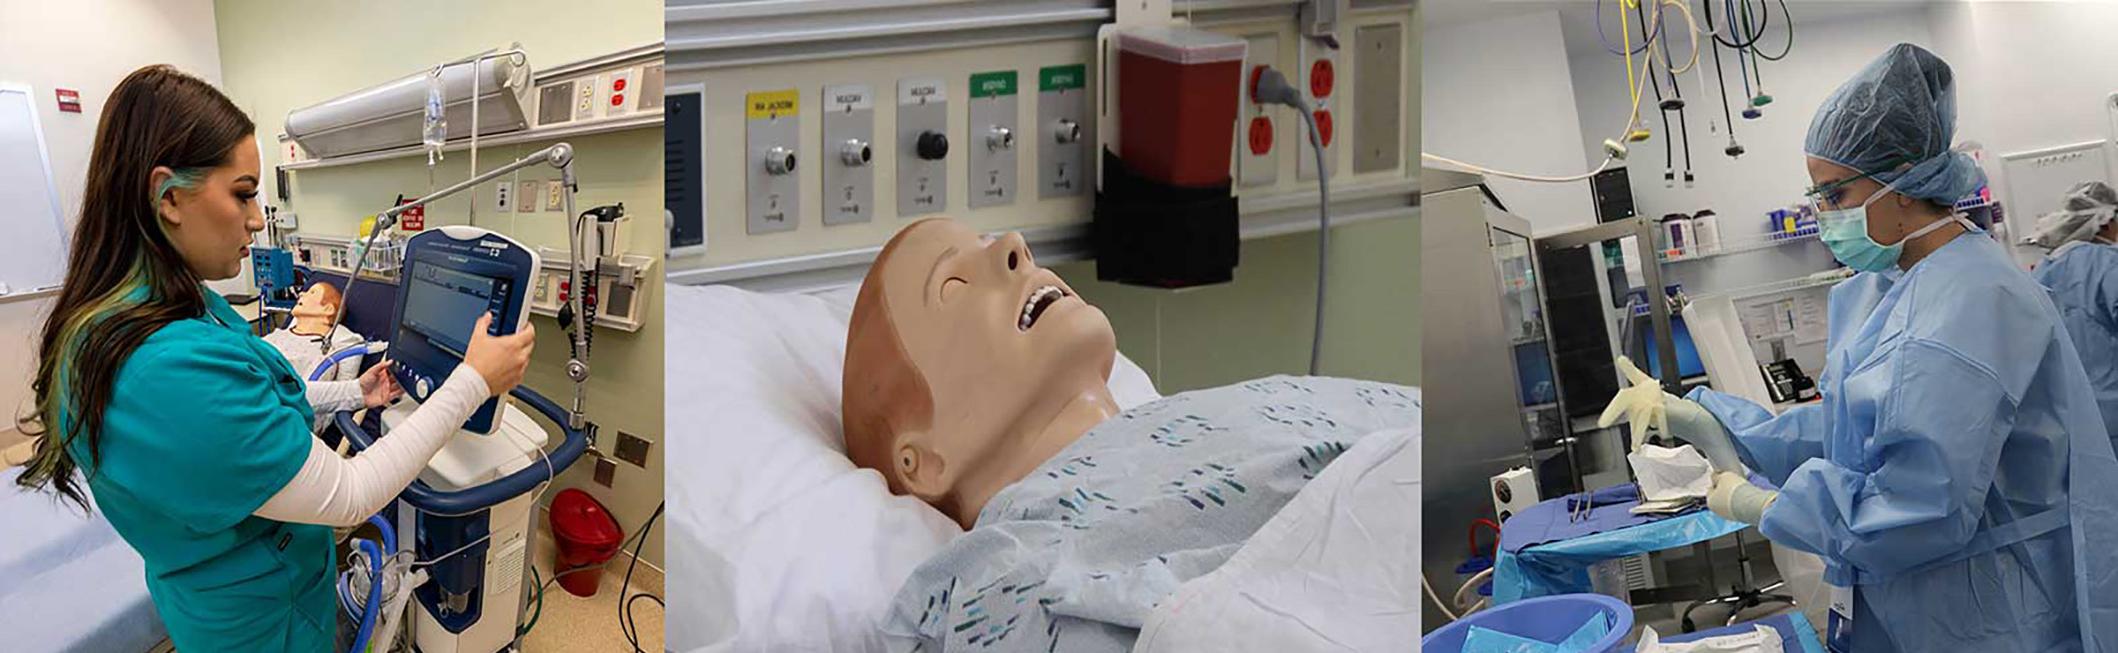 在模拟实验室工作的学生和躺在医院病床上的人体模型.